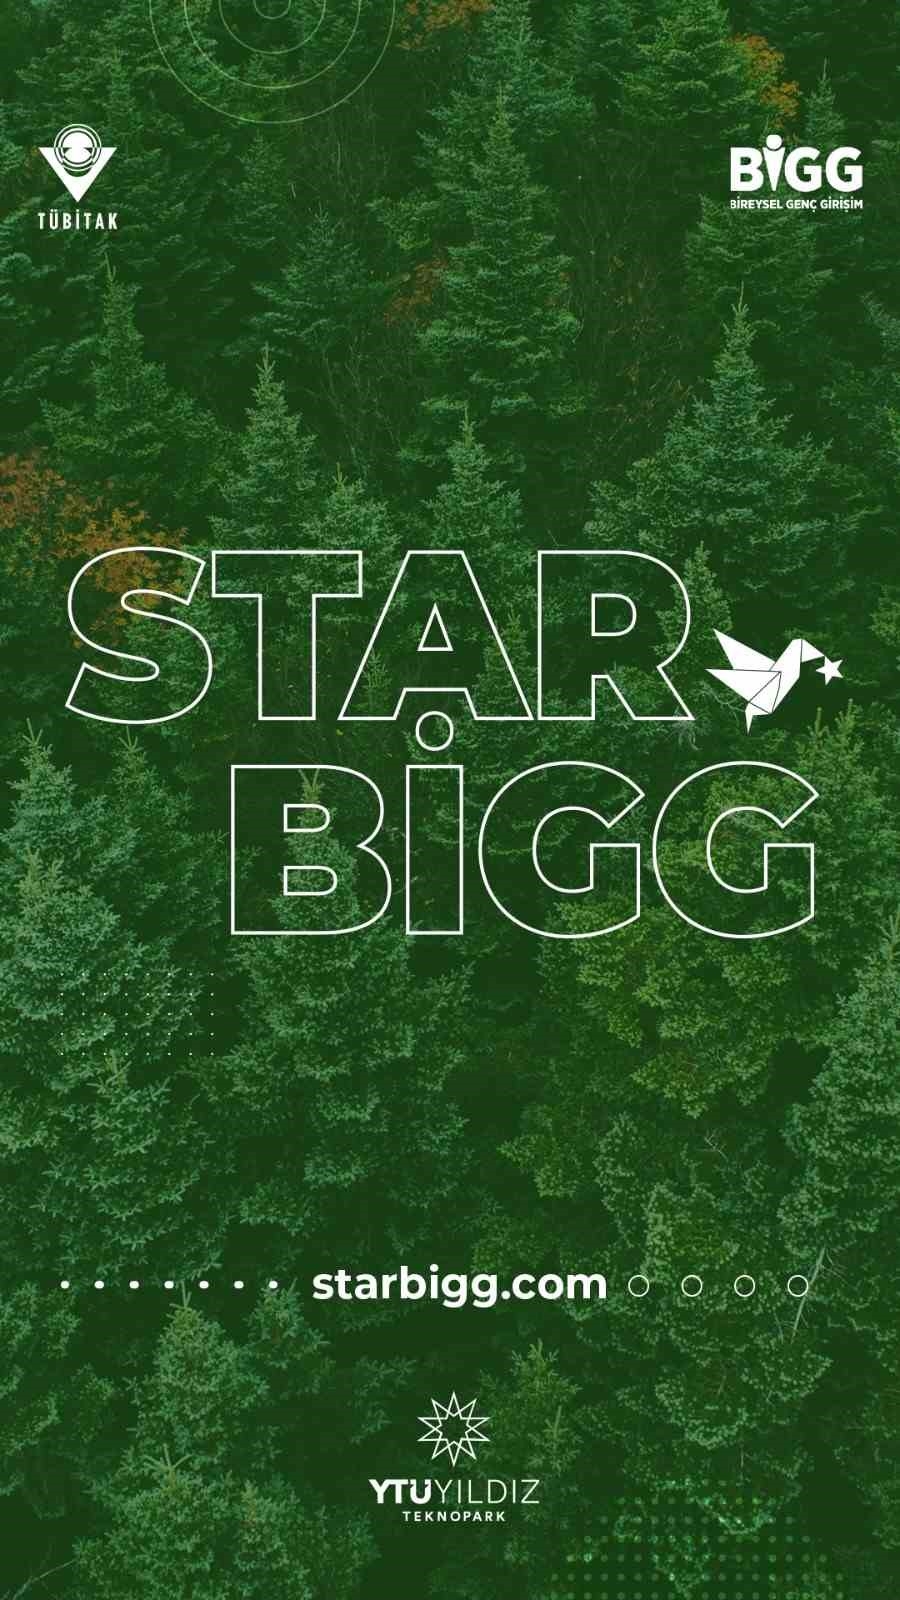 STAR BIGG-Yeşil Büyüme Programı AB Raporu’nda
